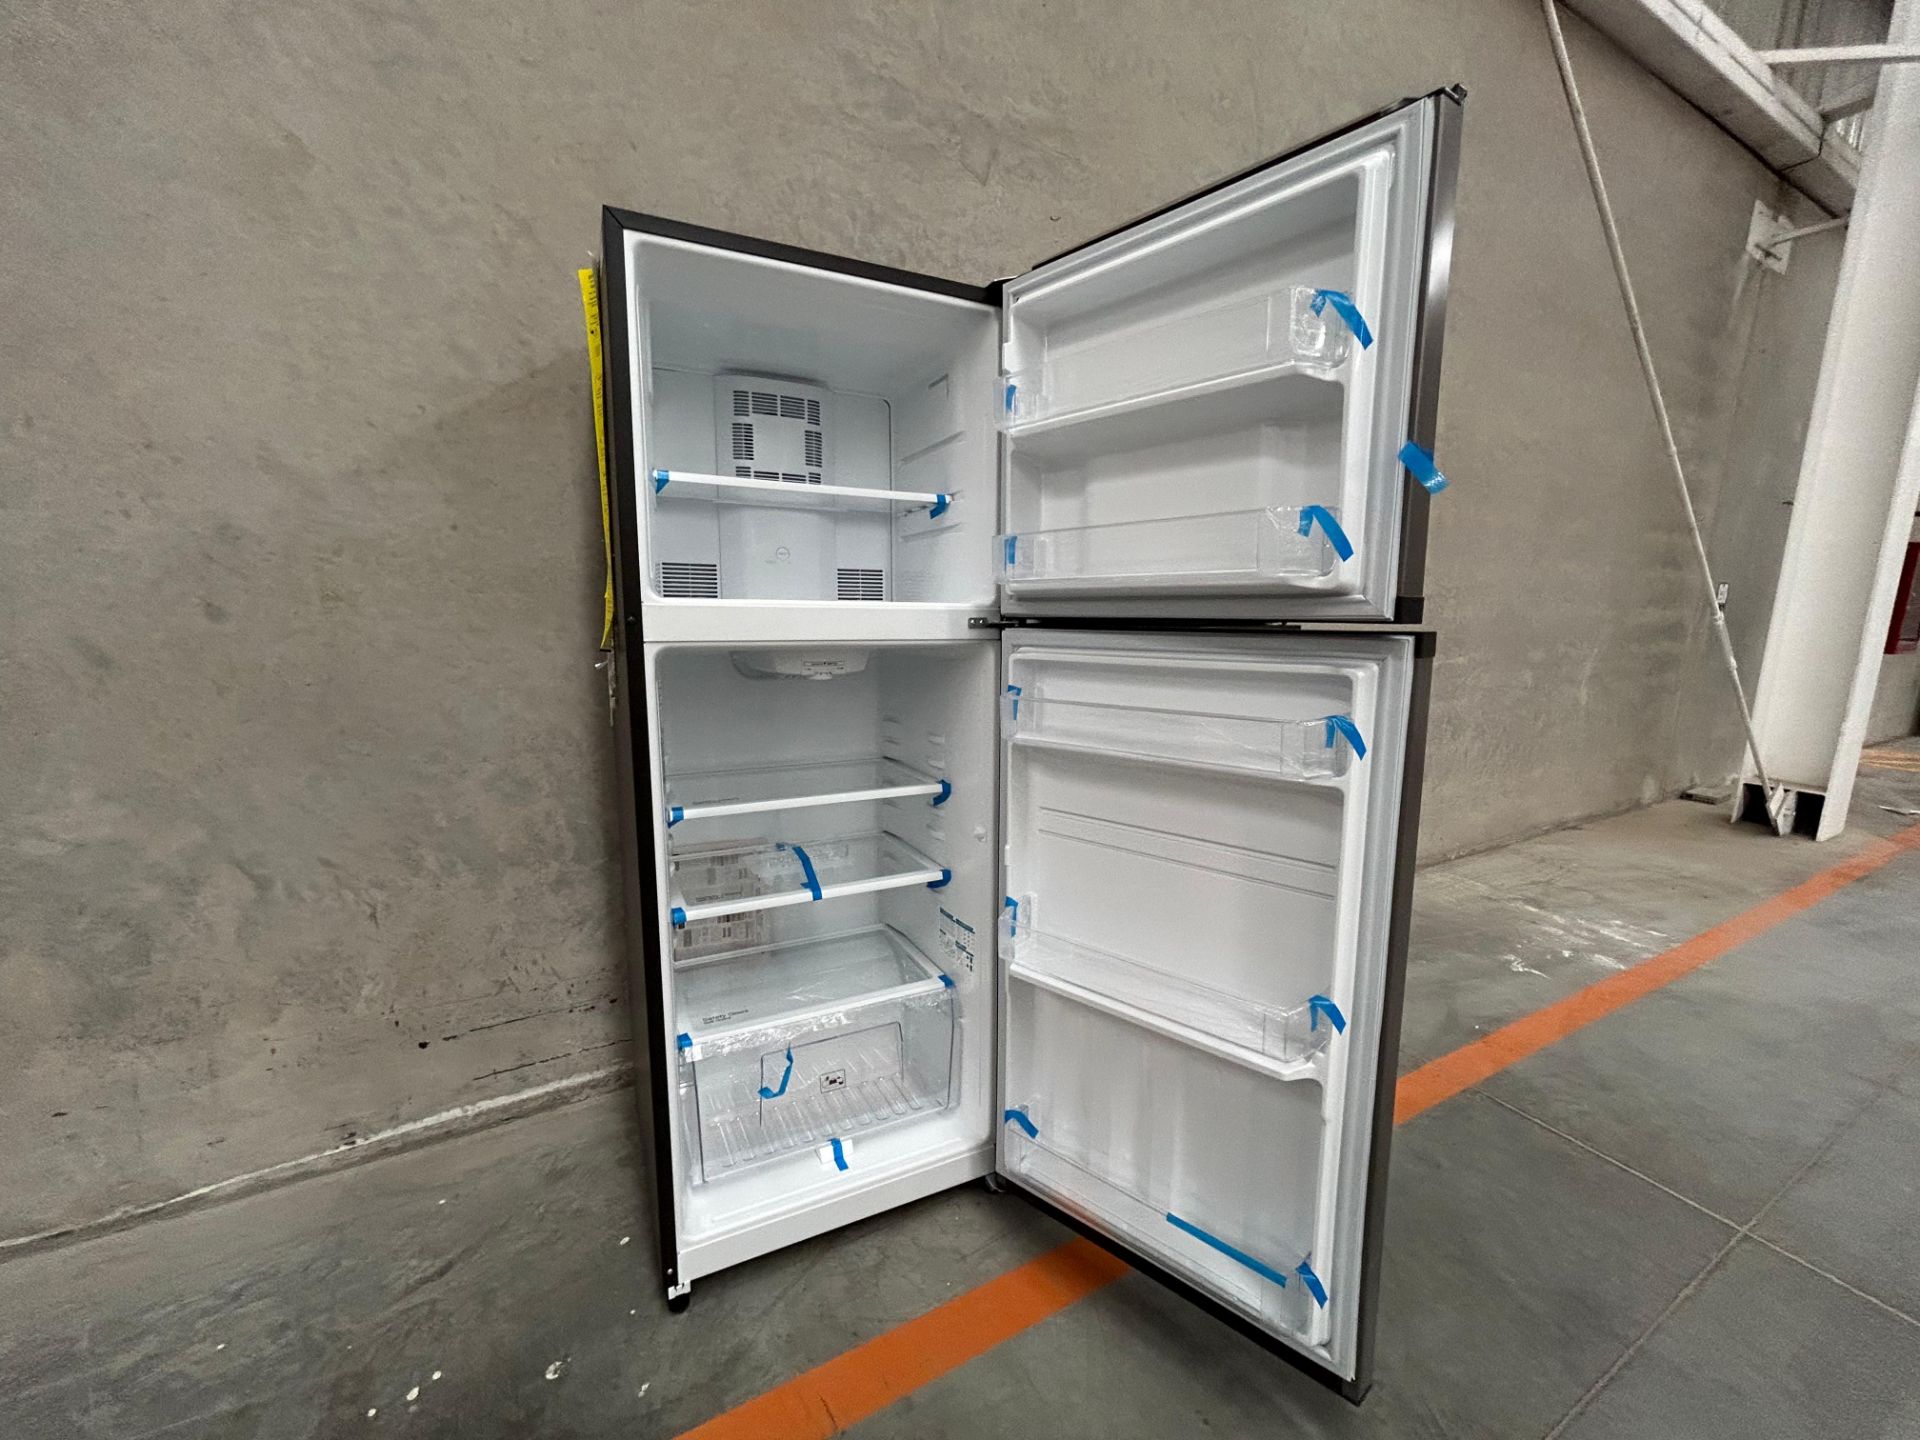 Lote de 2 Refrigeradores contiene: 1 Refrigerador Marca MABE, Modelo RME360PVMRM0, Serie 21969, Col - Image 4 of 15